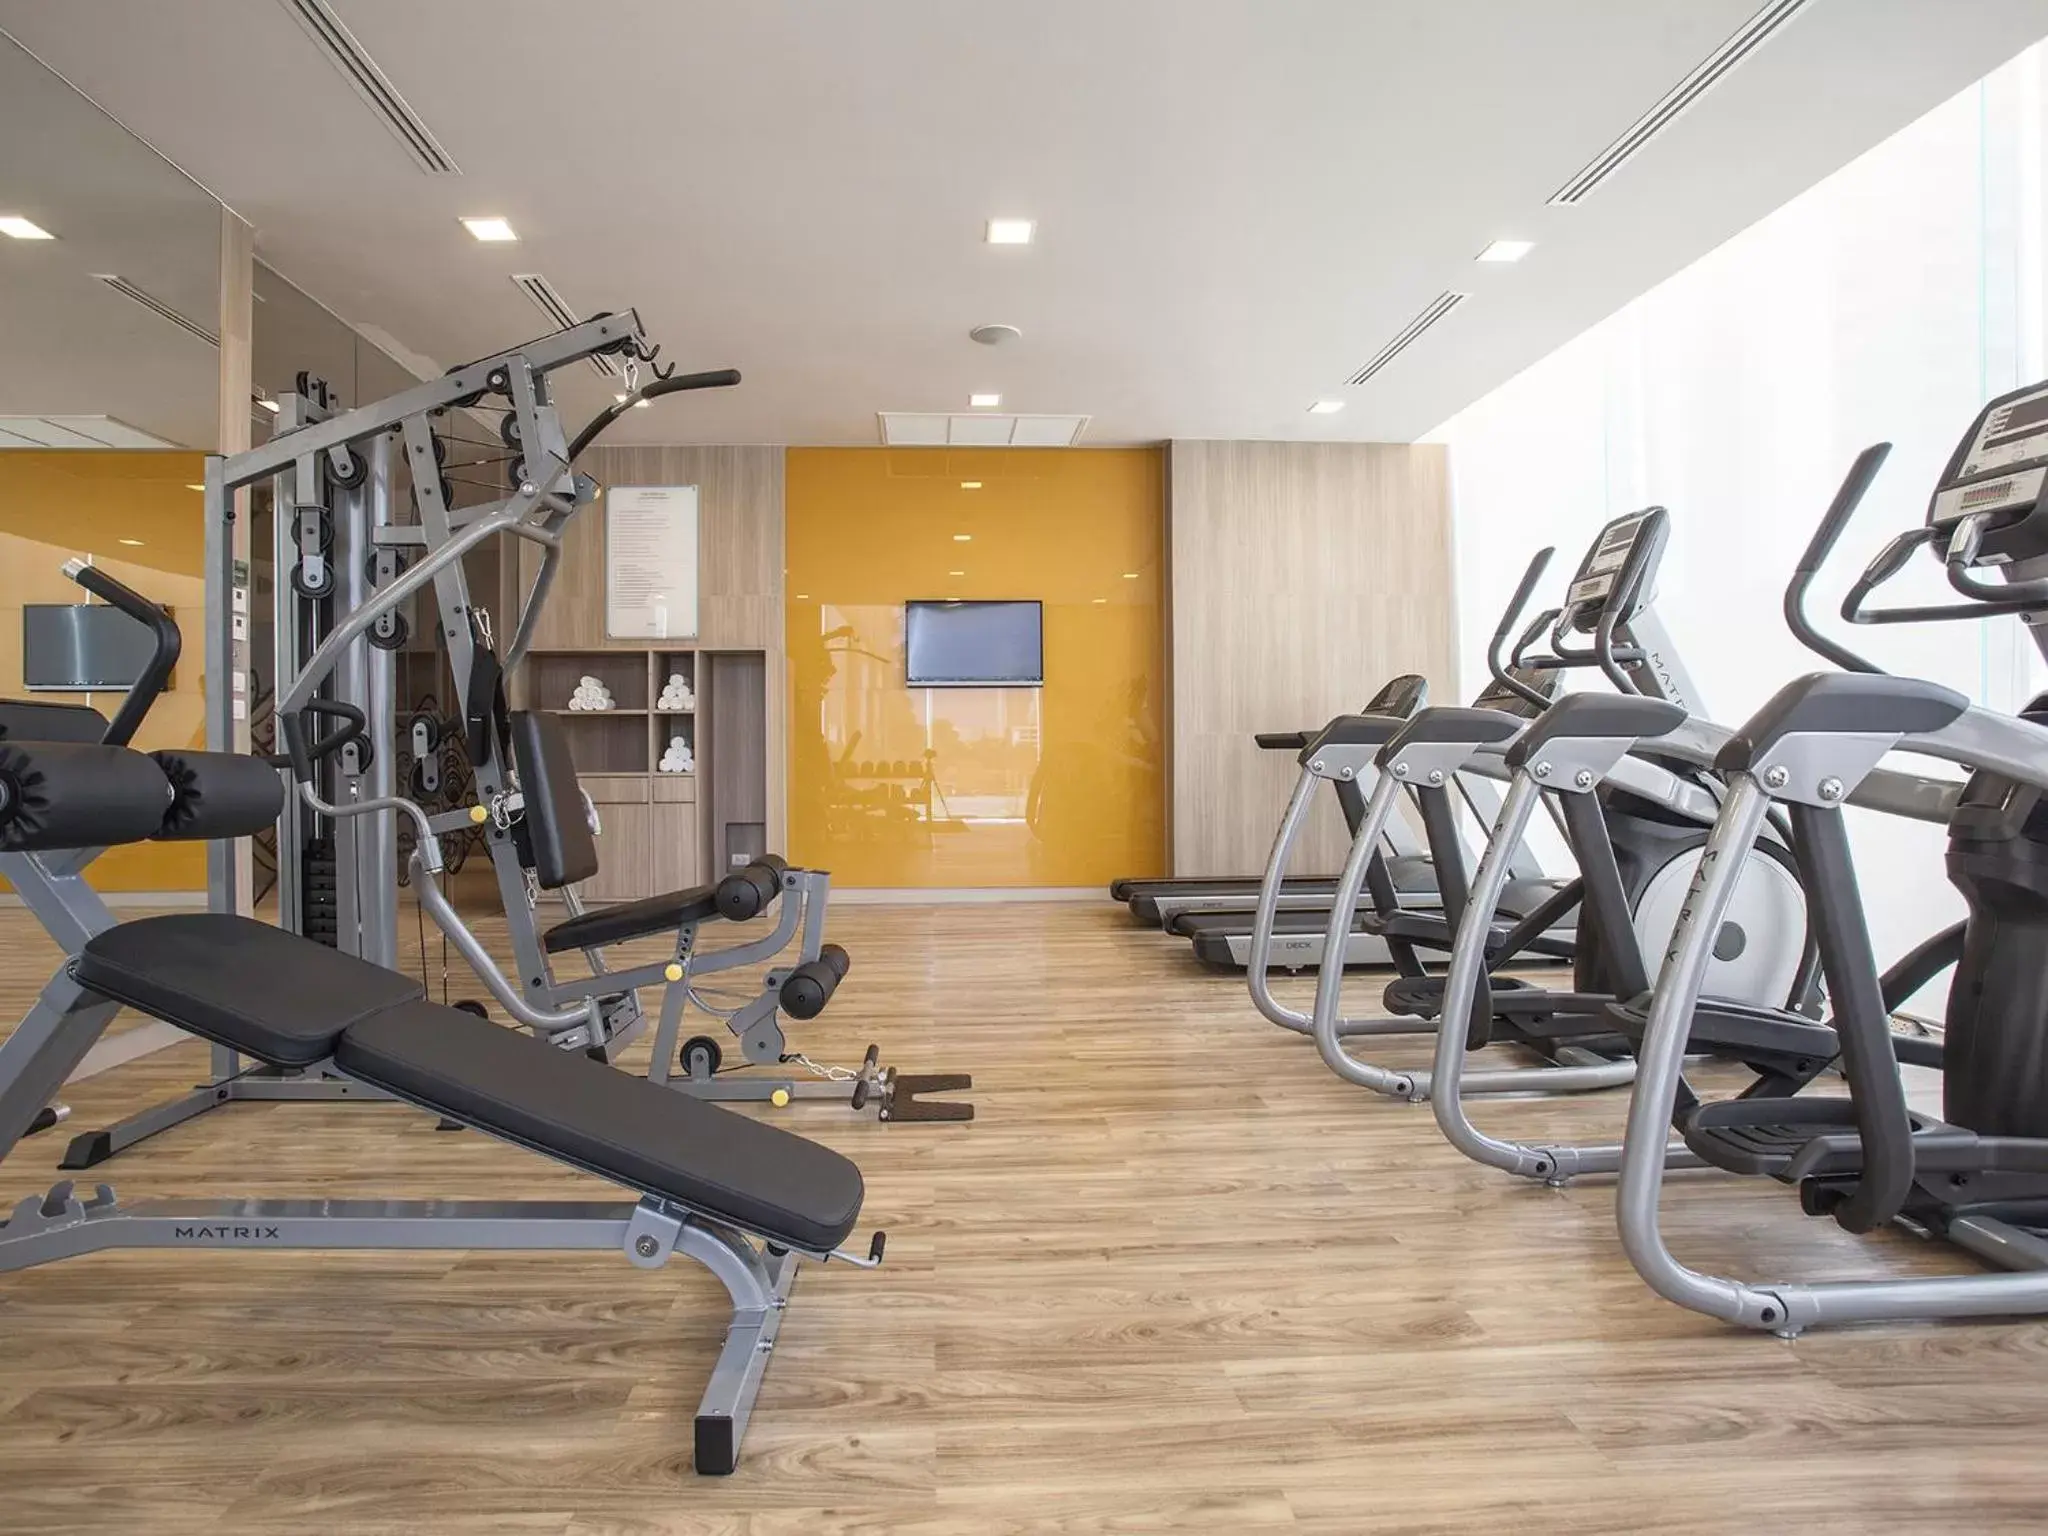 Fitness centre/facilities, Fitness Center/Facilities in Mercure Pattaya Ocean Resort